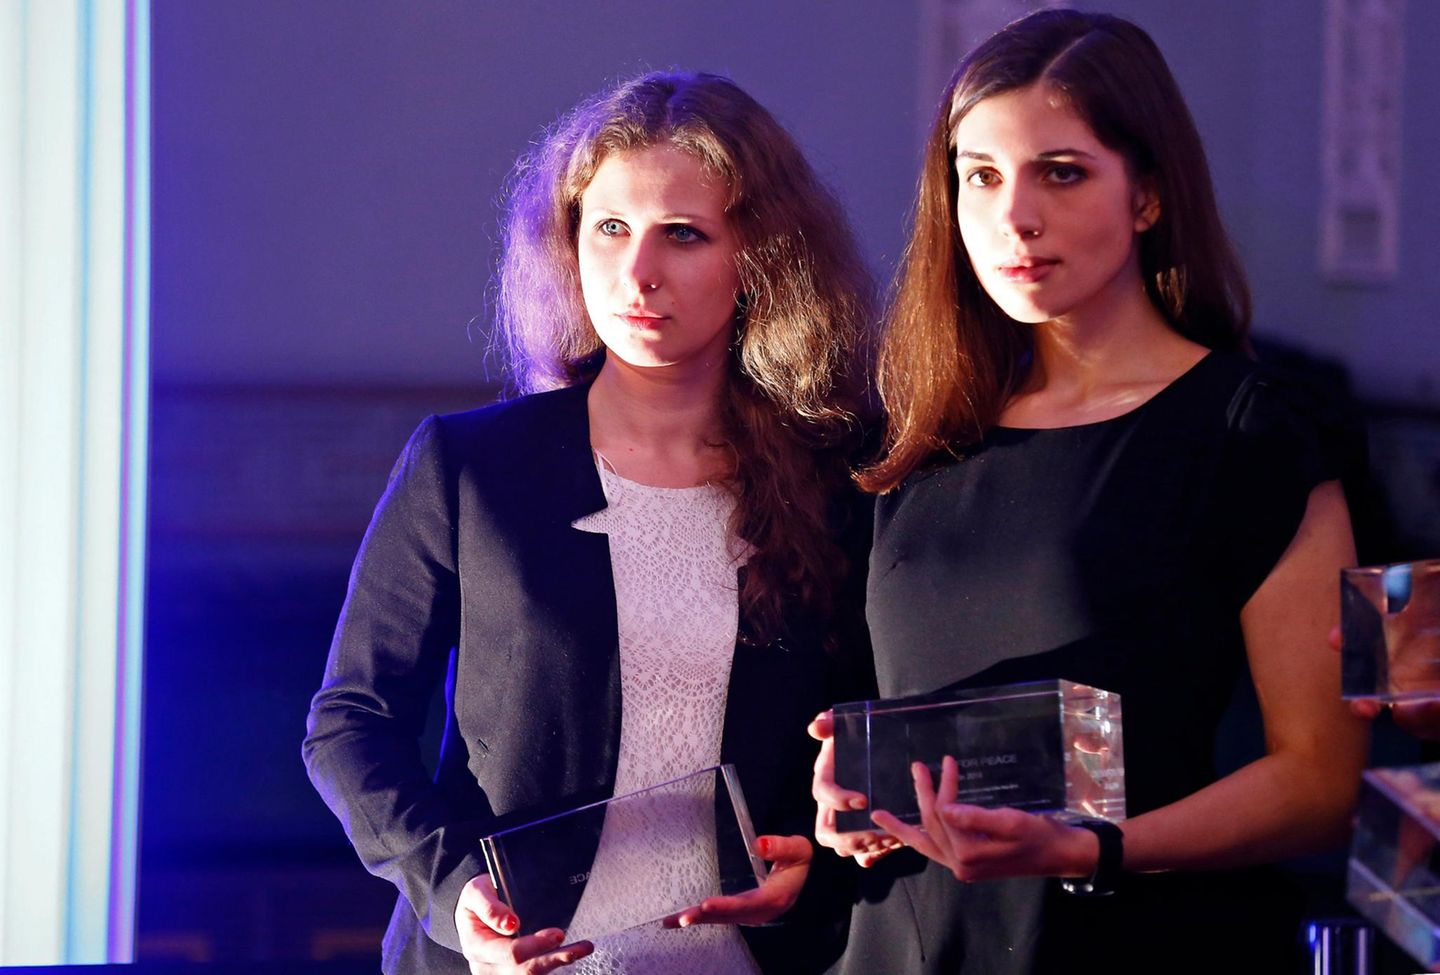 Die "Pussy Riot"-Aktivistinnen Marija Aljochina und Nadeschda Tolokonnikowa bekommen für den Film "Pussy Riot: A Punk Prayer" den Preis in der Kategorie "Wertvollste Dokumentation des Jahres".